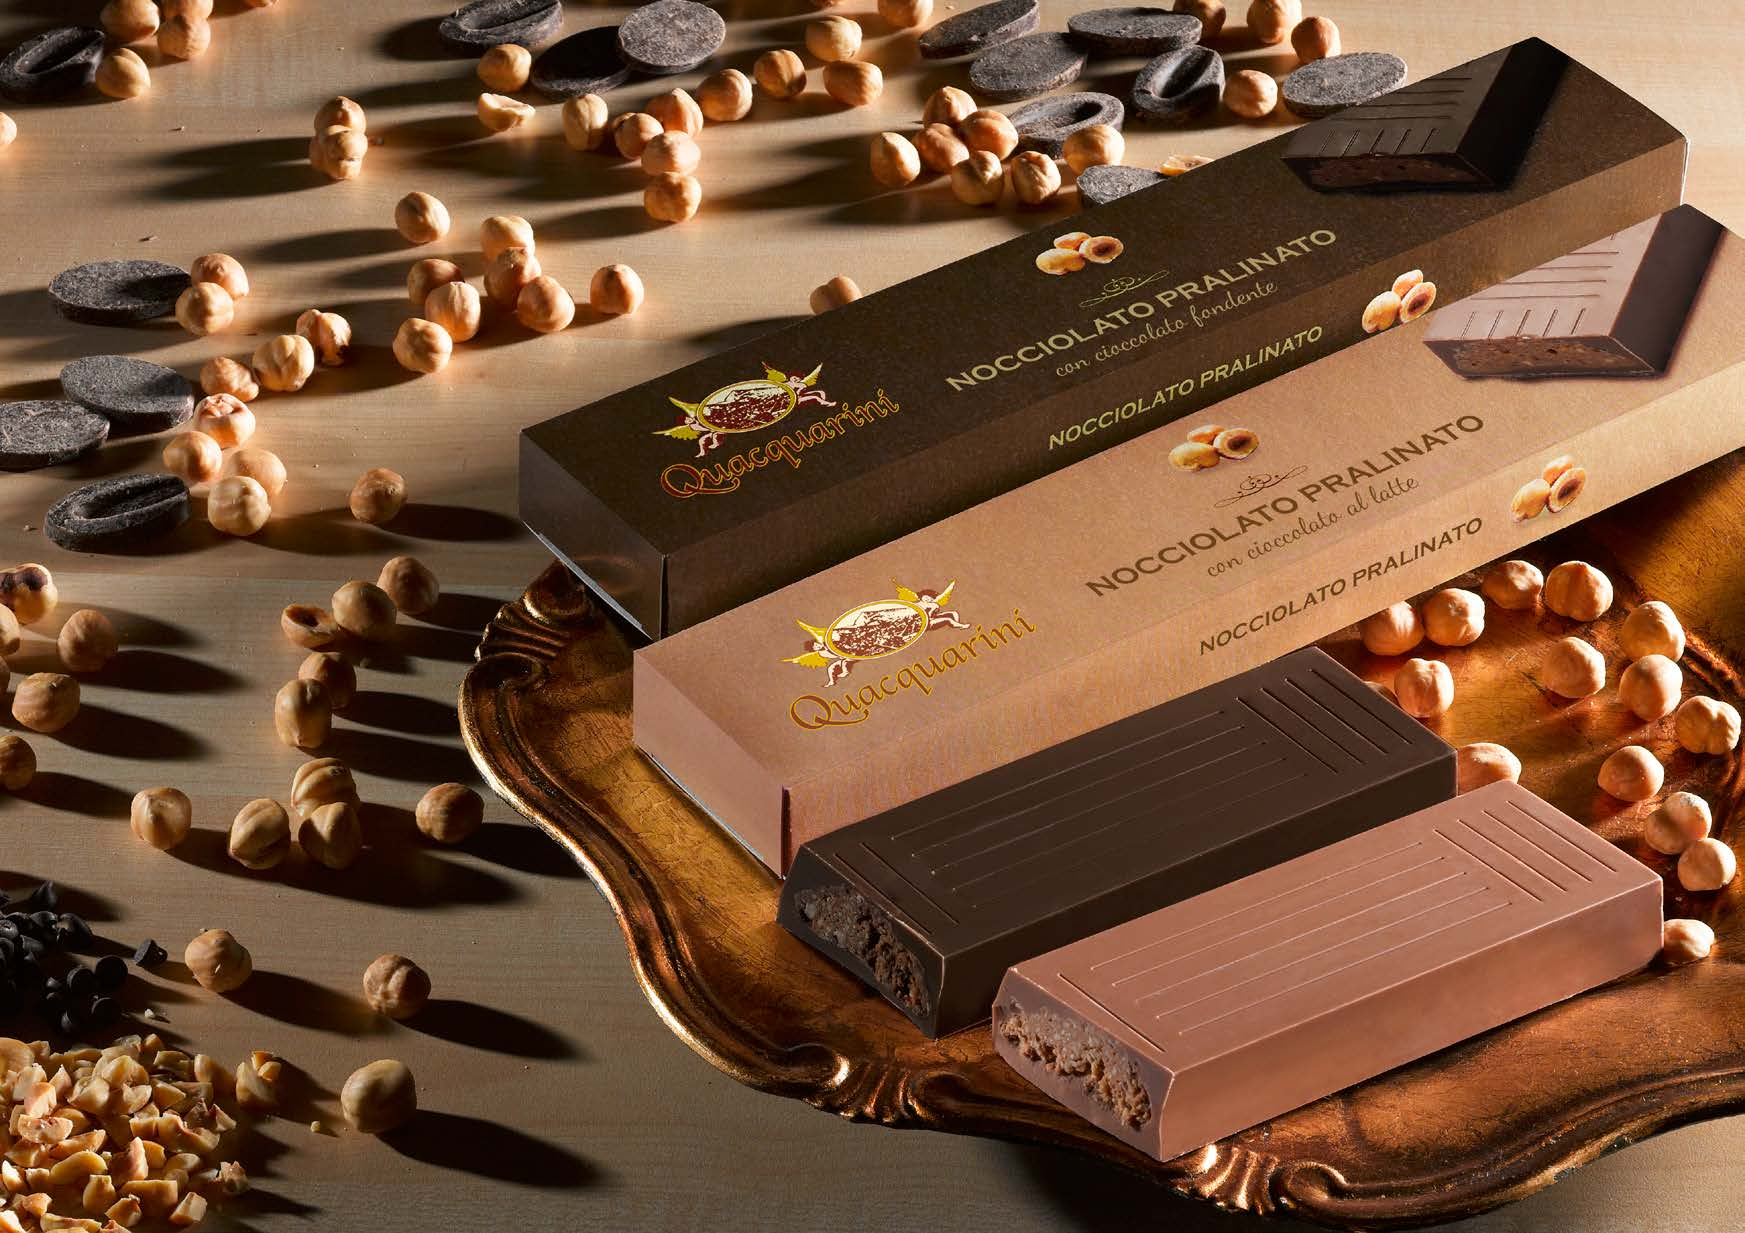 i Torroni NOCCIOLATO PRALINATO Gustose nocciole tostate e macinate si legano al cioccolato in una morbida pralina di nocciole che rende il cuore di questo prodotto unico nel suo genere.